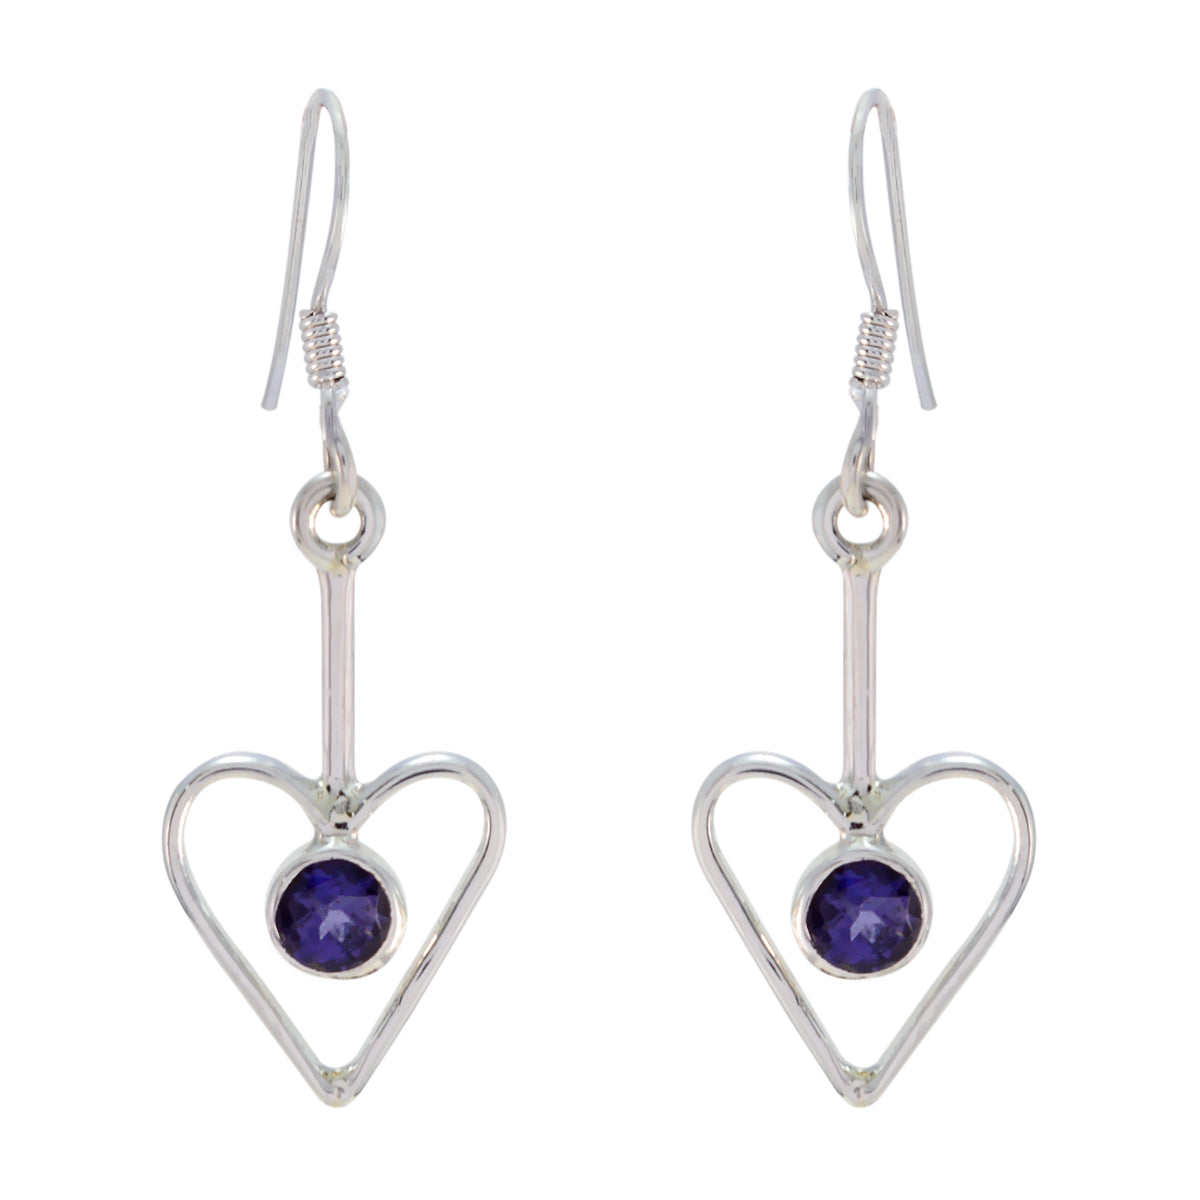 Riyo Good Gemstones round Faceted Nevy Blue Iolite Silver Earrings wedding gift